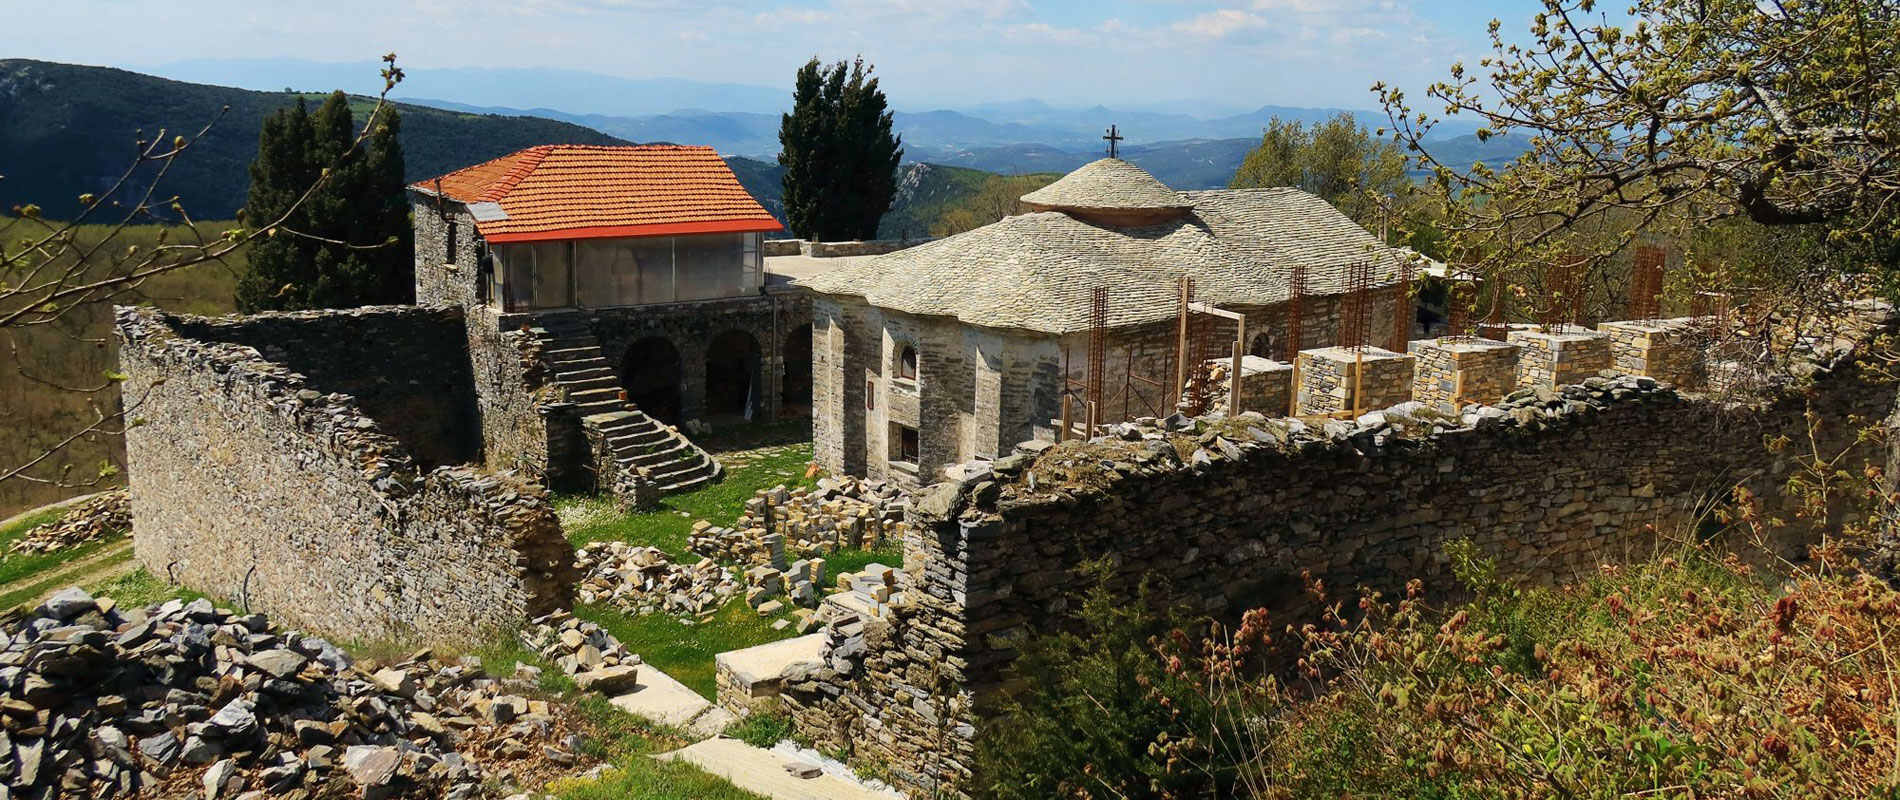 20-astonishing-facts-about-makrinitsa-monastery